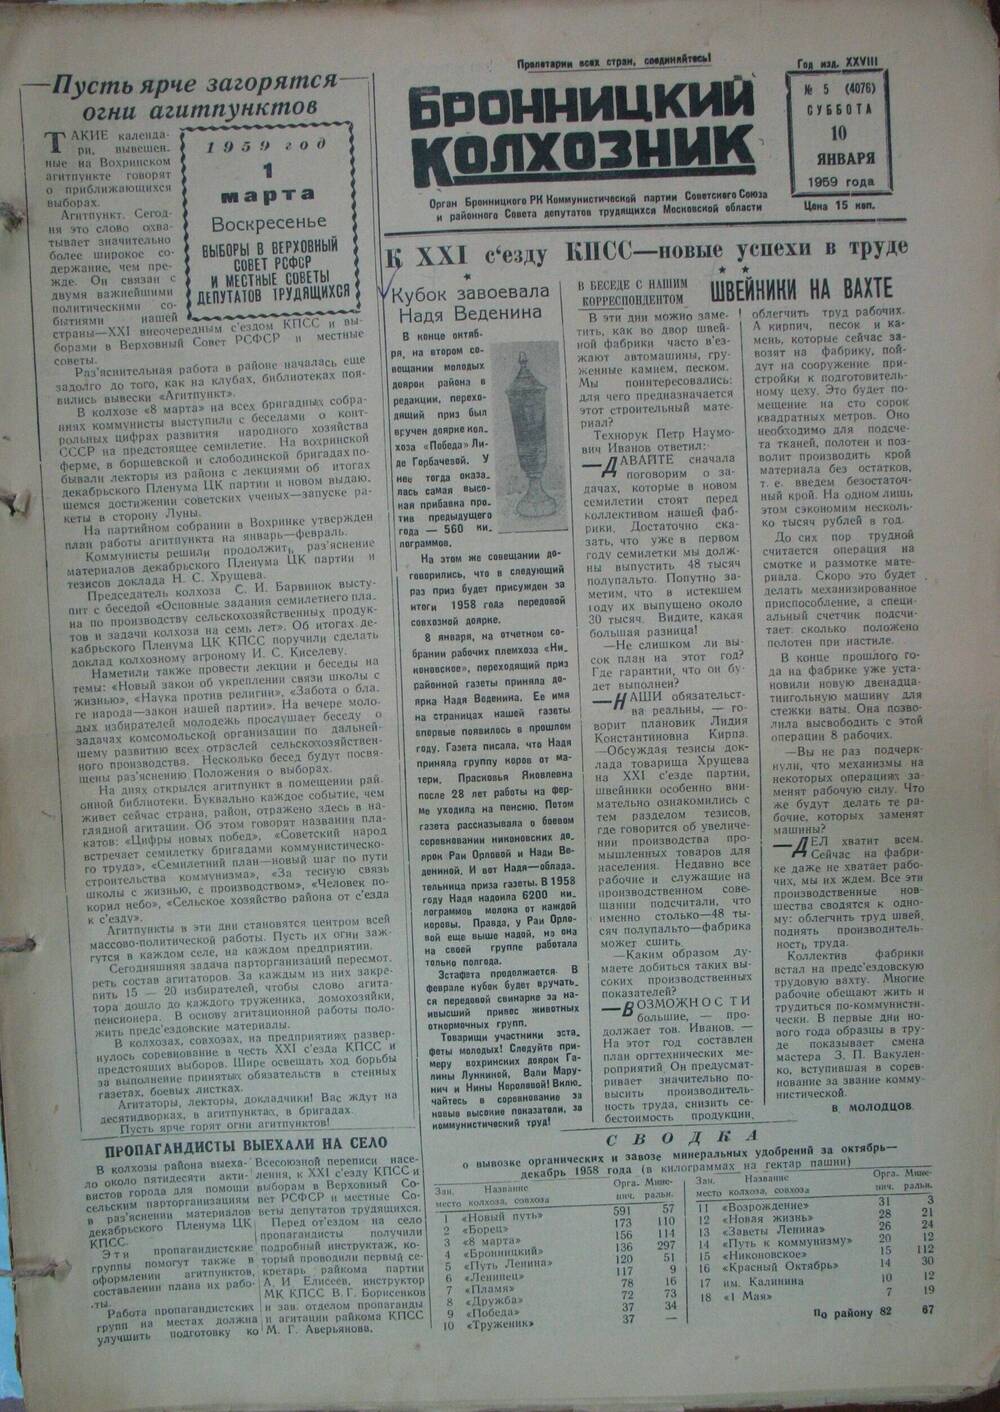 Бронницкий колхозник,  газета № 5 от 10 января 1959г